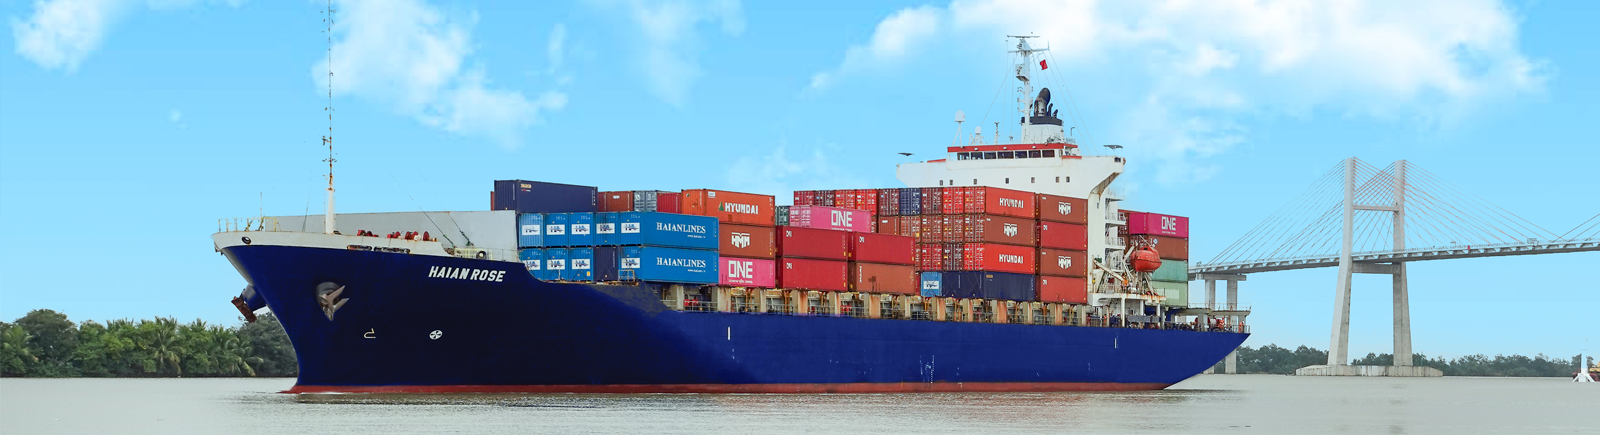 Doanh nghiệp sở hữu đội tàu container hàng đầu Việt Nam: Chiếm gần 40% sức chở trong ngành vận tải container toàn quốc - Ảnh 1.